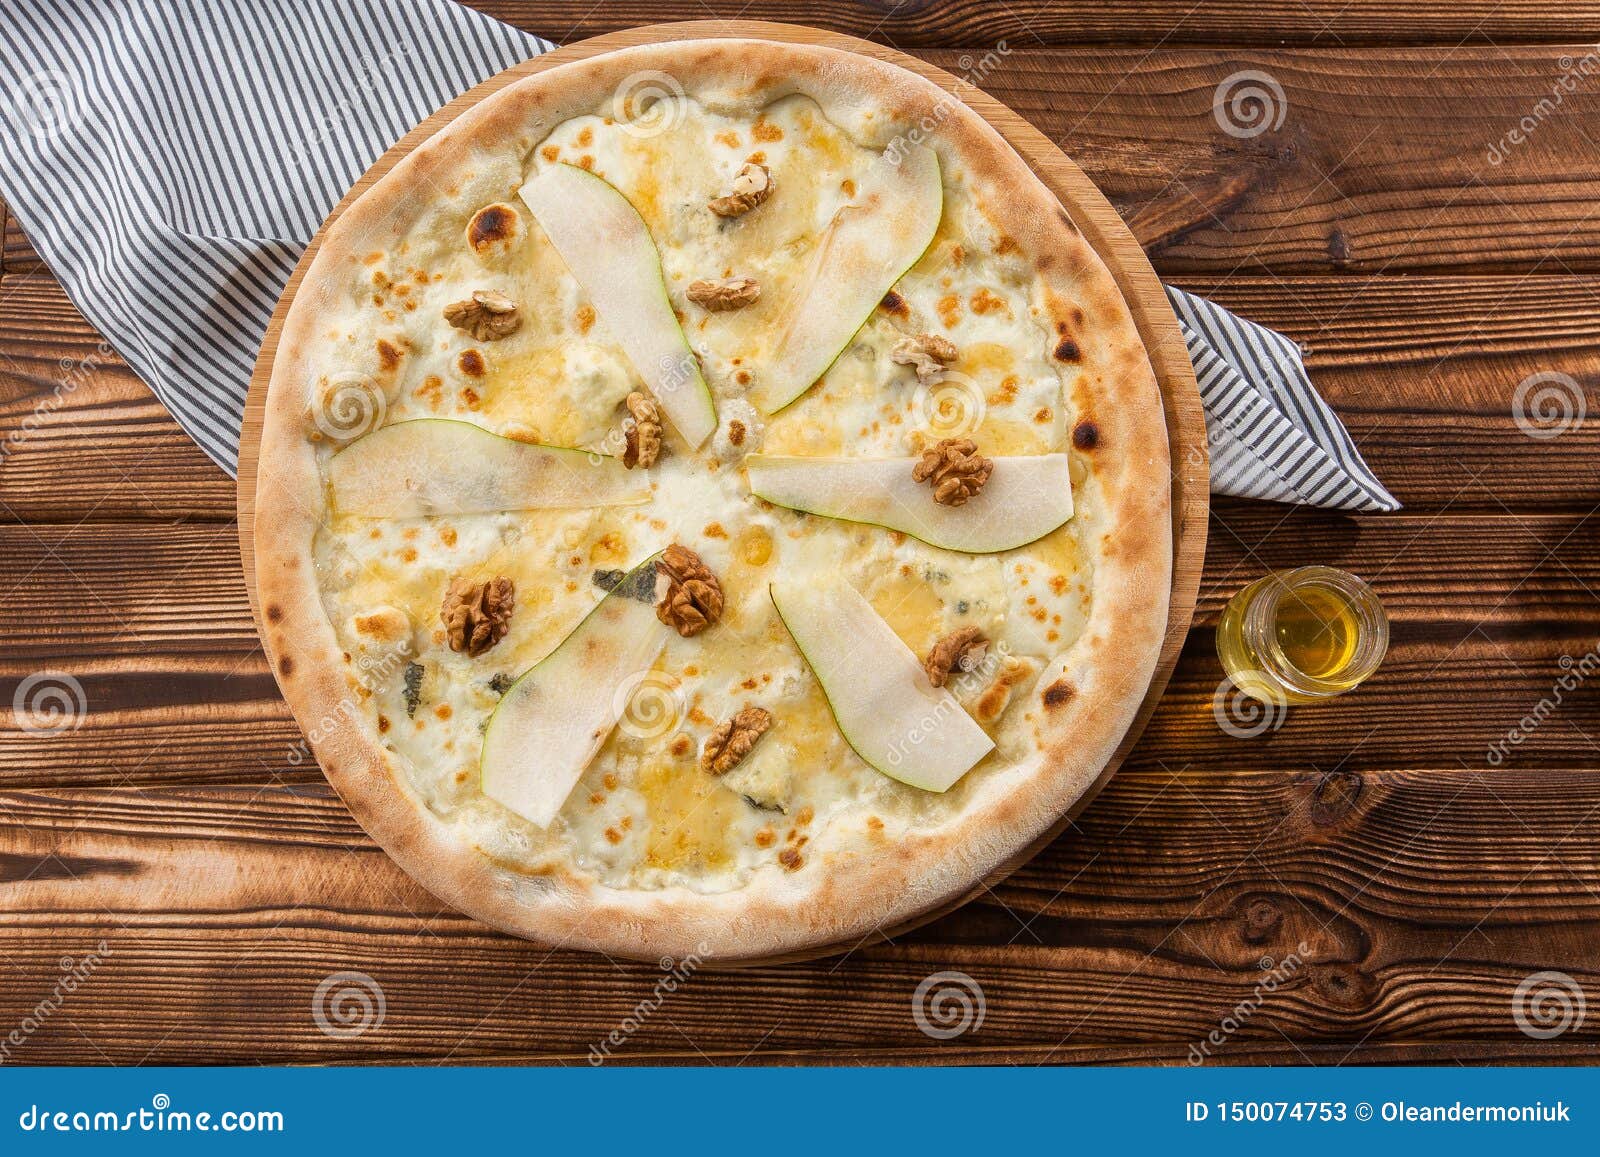 пицца с грушей и горгонзолой рецепт юлии высоцкой фото 75